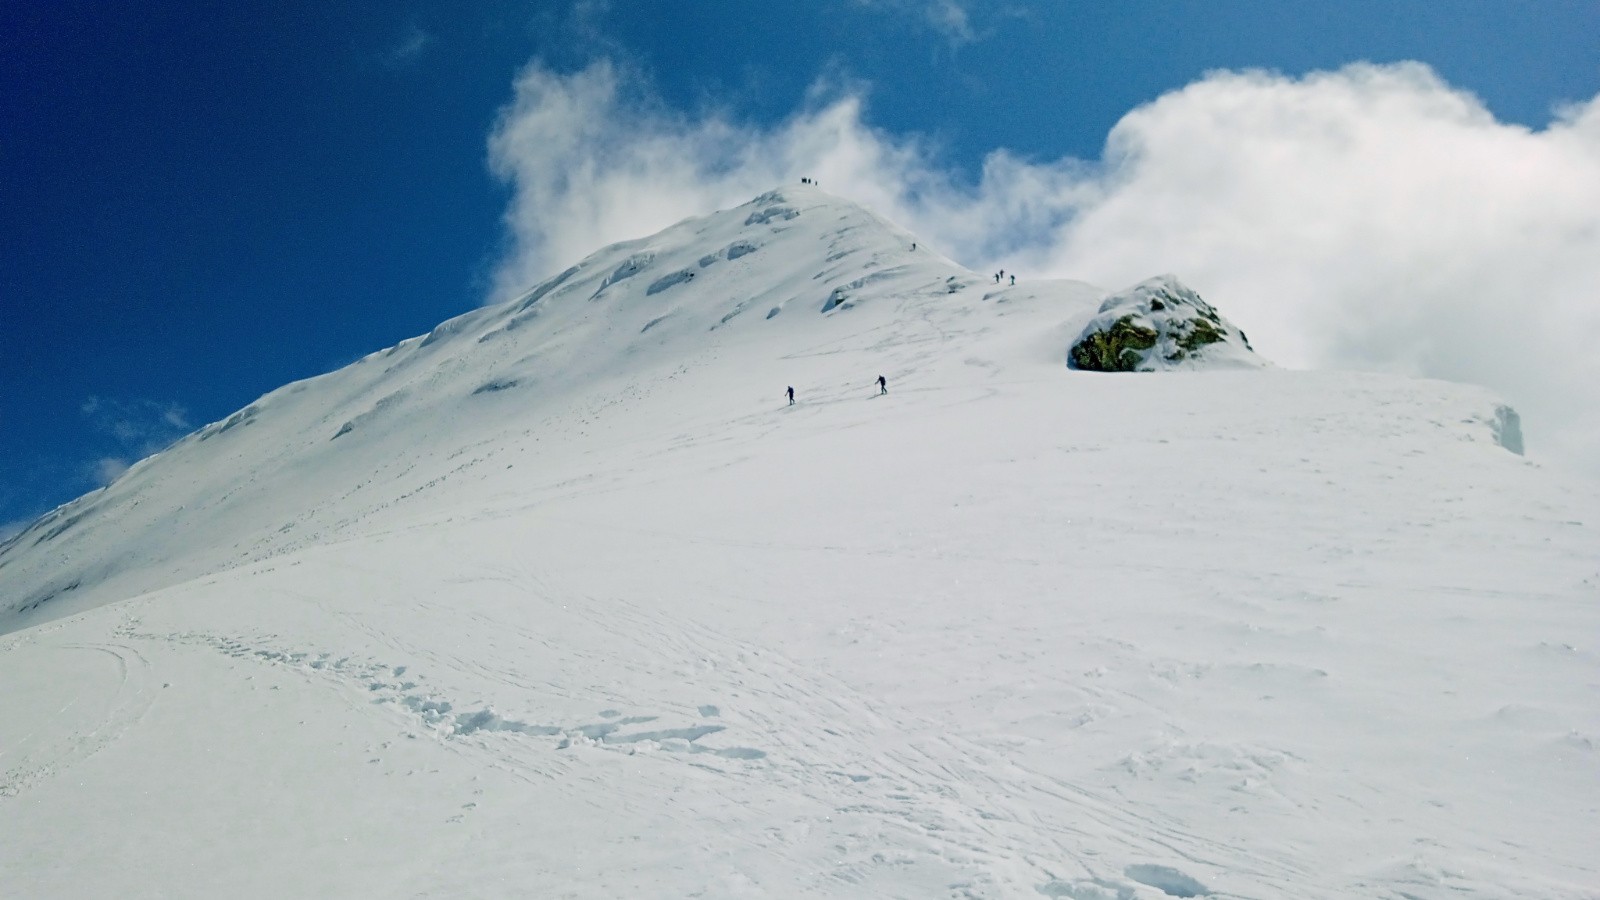 Peu de monde aujourd'hui : 9 skieurs et 5 alpis